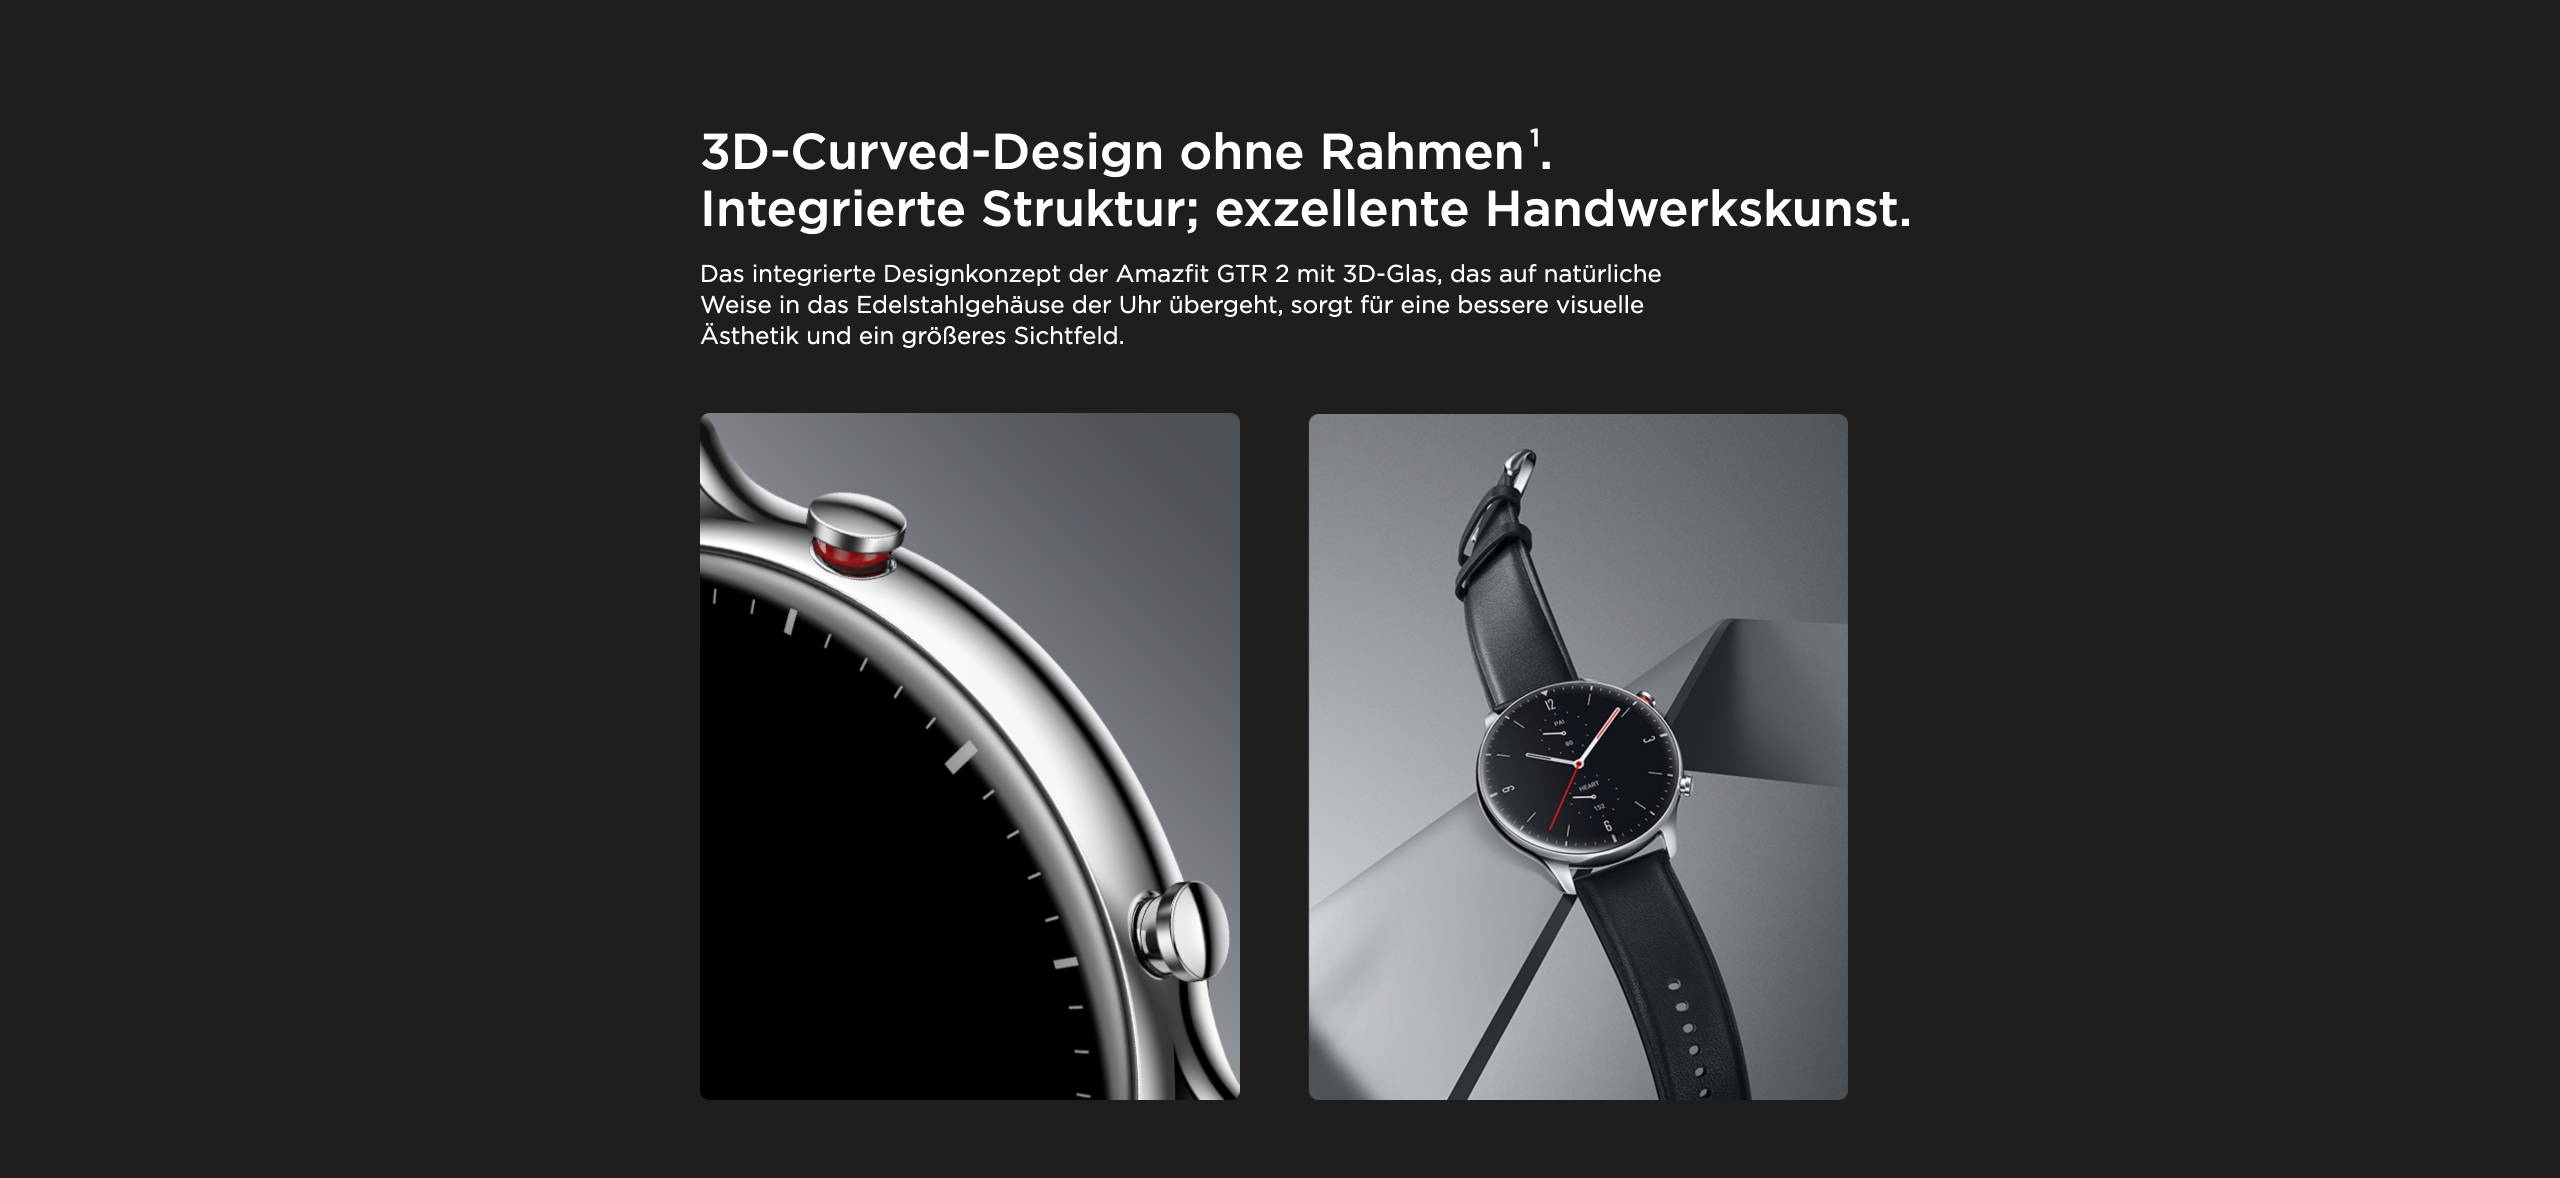 Amazfit GTR 2 - 3D-Curved-Design ohne Rahmen. Integrierte Struktur; exzellente Handwerkskunst.